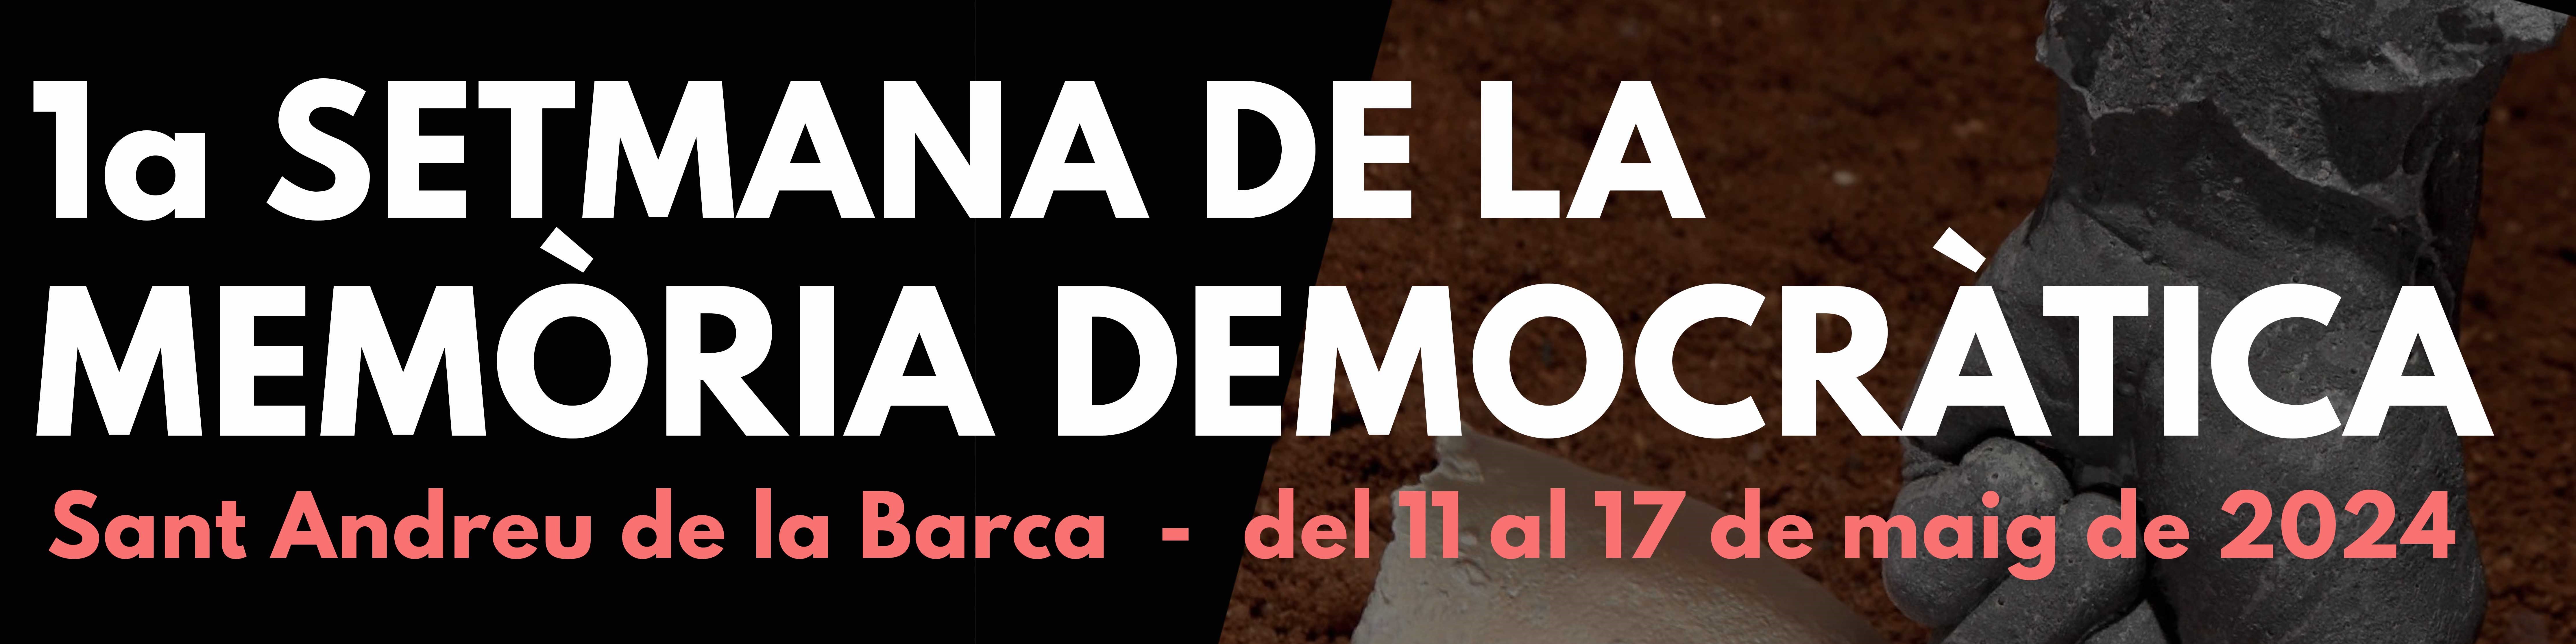 Imatge de la notícia: Es presenta la 1a Setmana de la Memòria Democràtica de Sant Andreu de la Barca